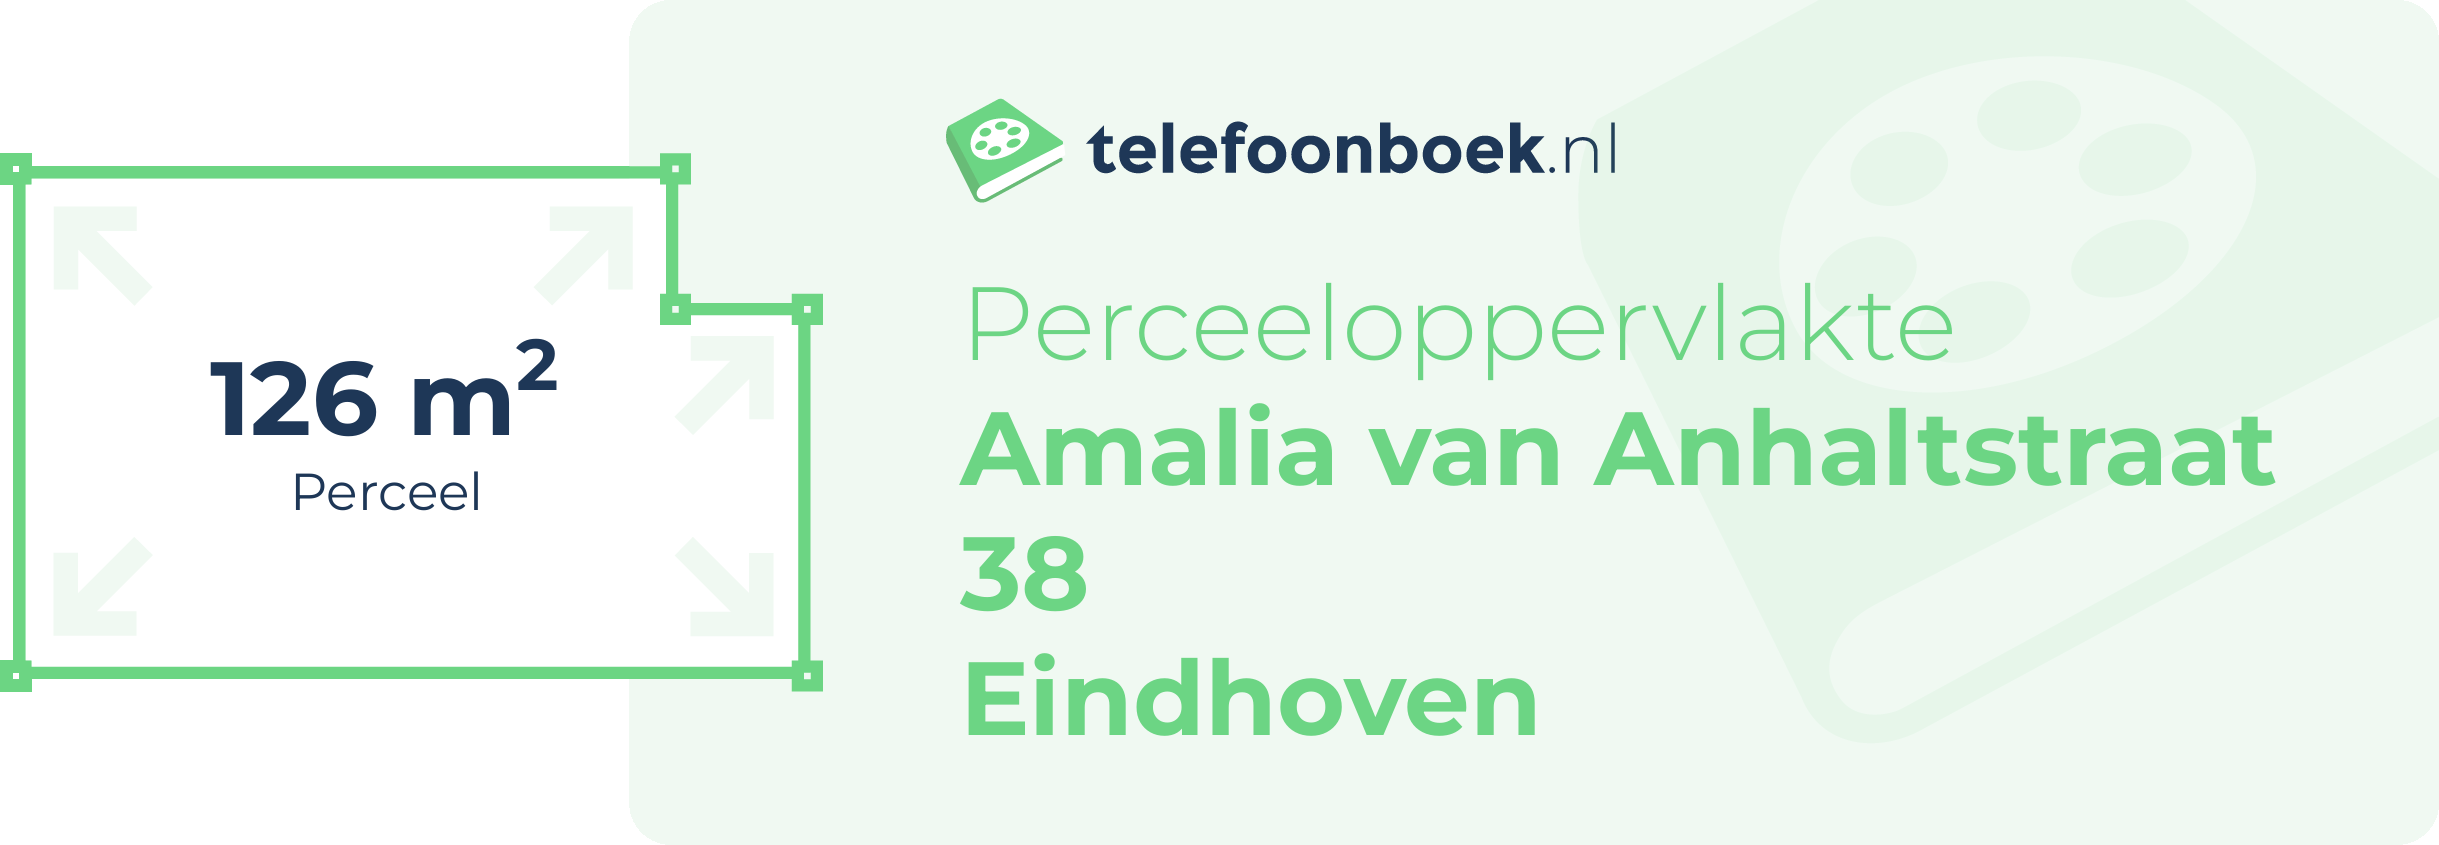 Perceeloppervlakte Amalia Van Anhaltstraat 38 Eindhoven